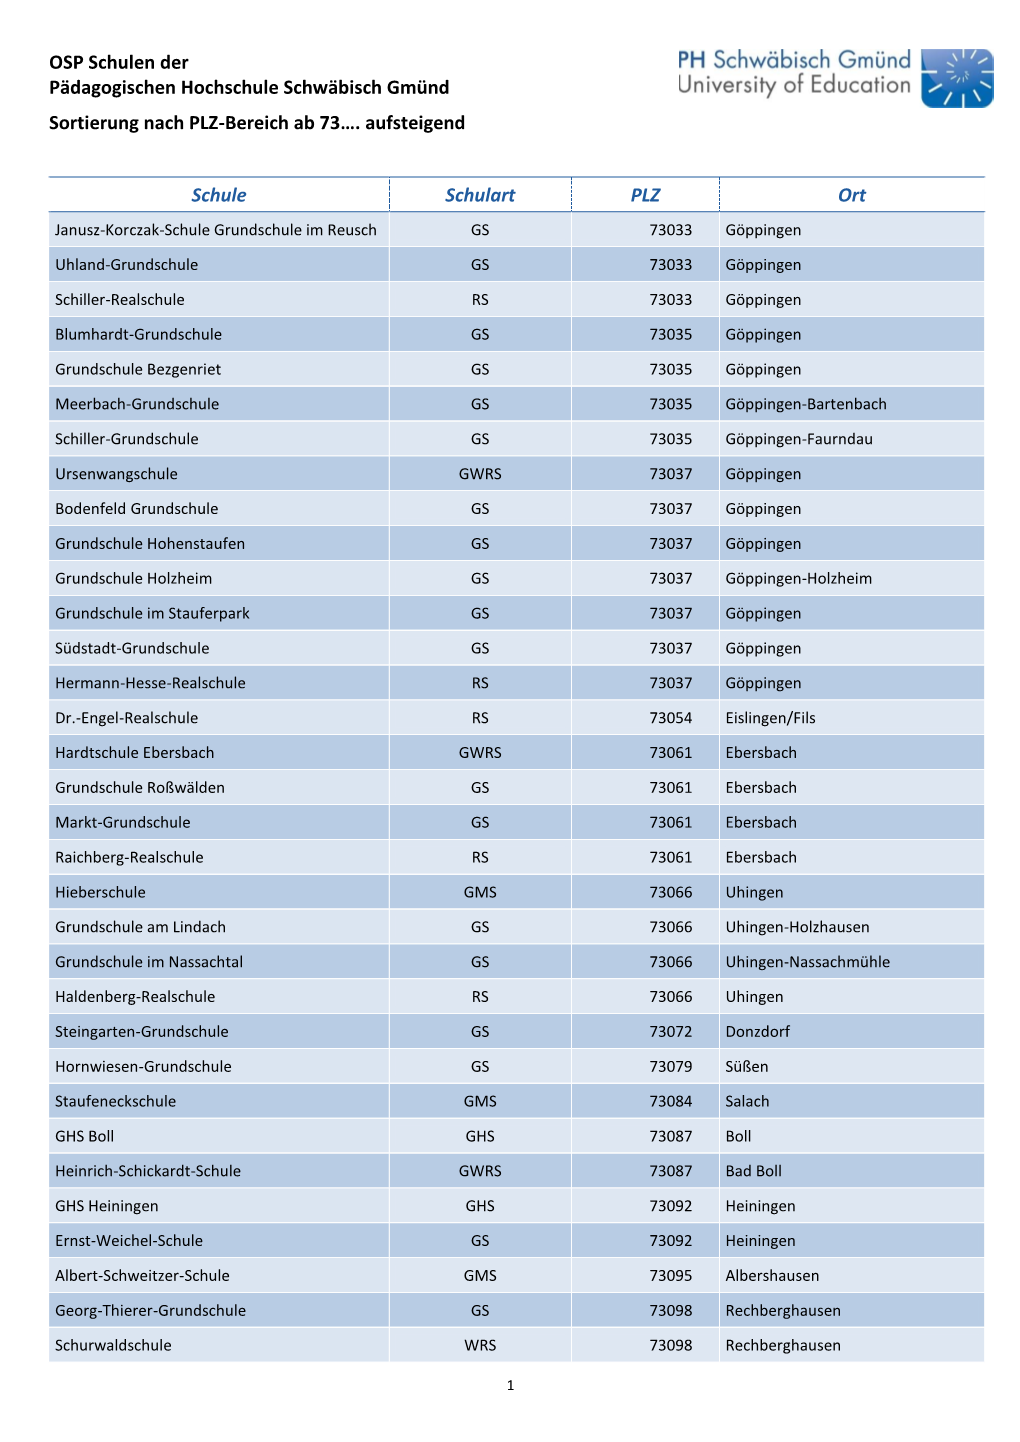 Liste OSP Schulen Sortierung Nach PLZ-Bereich Ab 73…. Aufsteigend